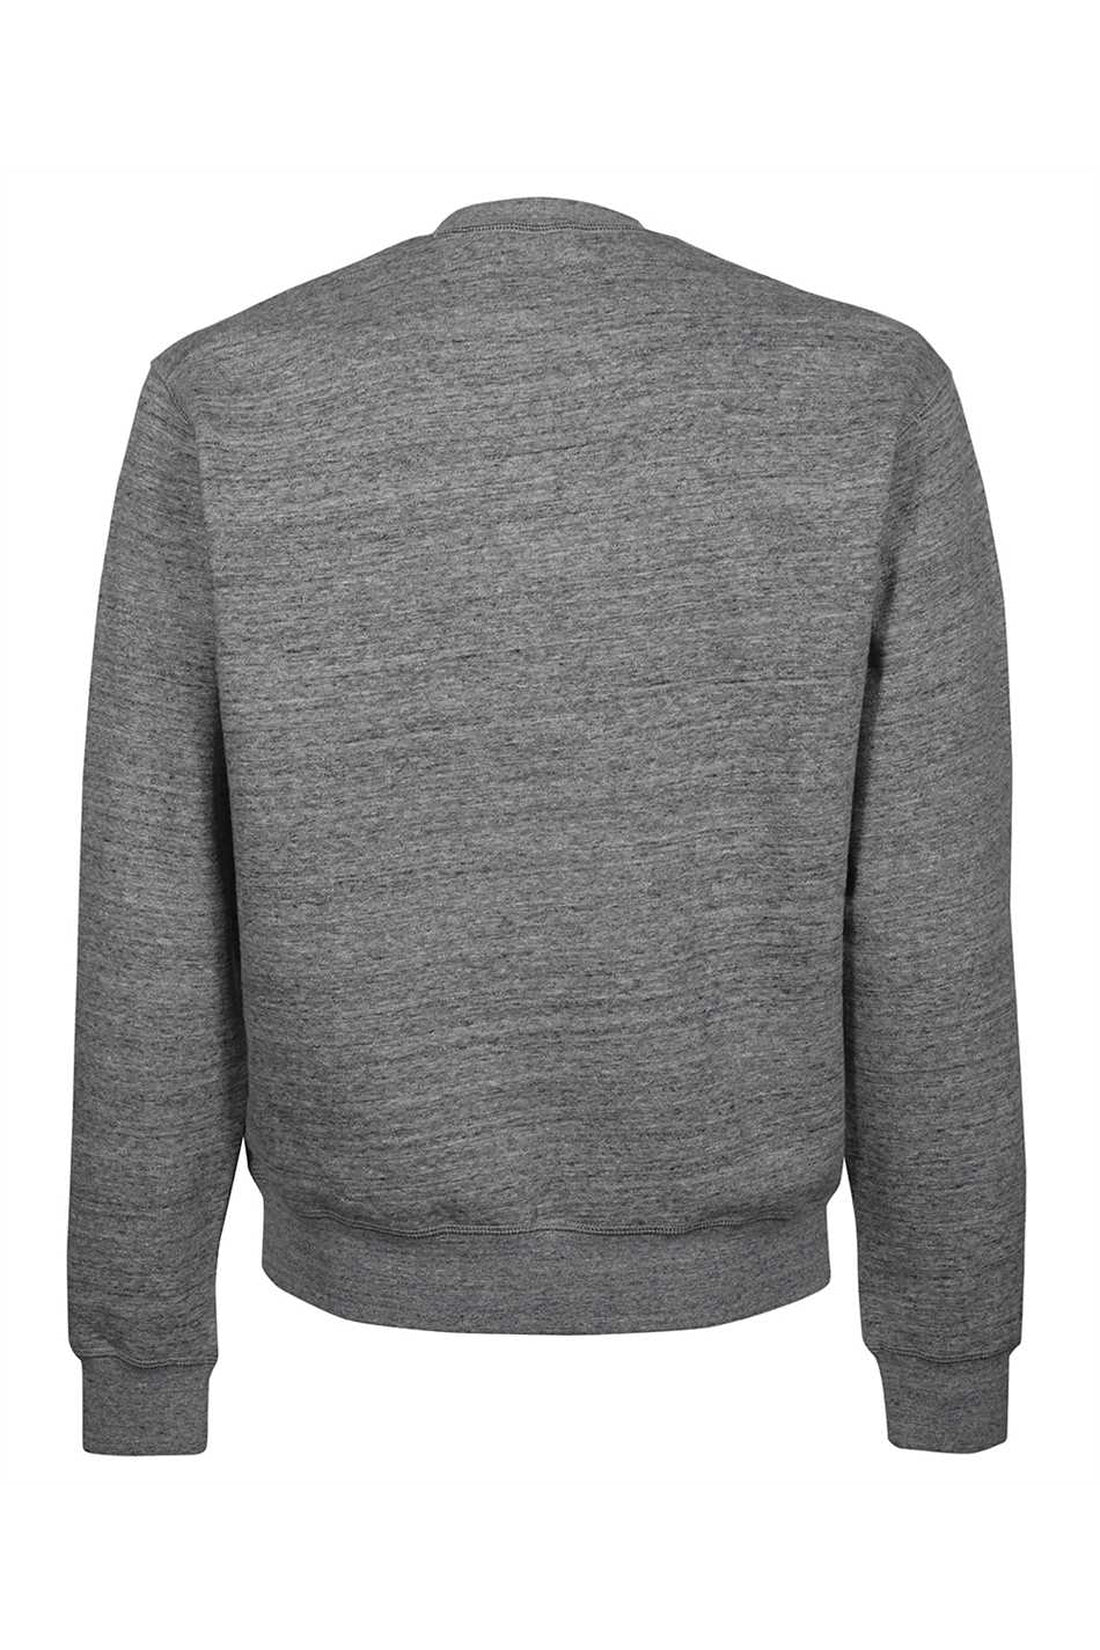 Dsquared2-OUTLET-SALE-Printed cotton sweatshirt-ARCHIVIST